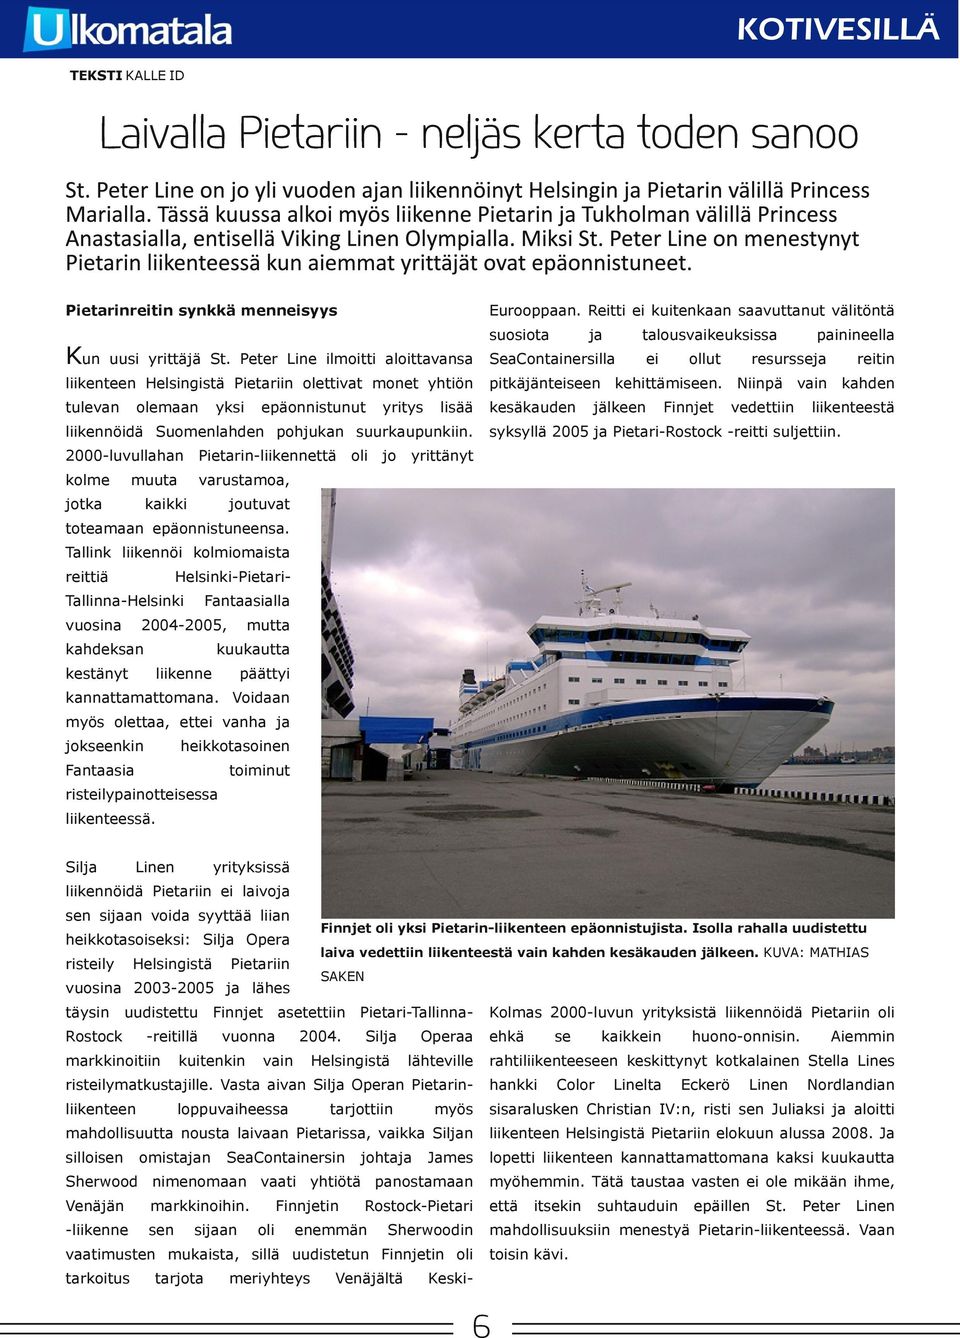 2000 luvullahan kolme Pietarin liikennettä muuta jotka varustamoa, kaikki oli jo yrittänyt suosiota SeaCtainersilla talousvaikeuksissa ei ollut painineella resursse reitin pitkäjänteiseen